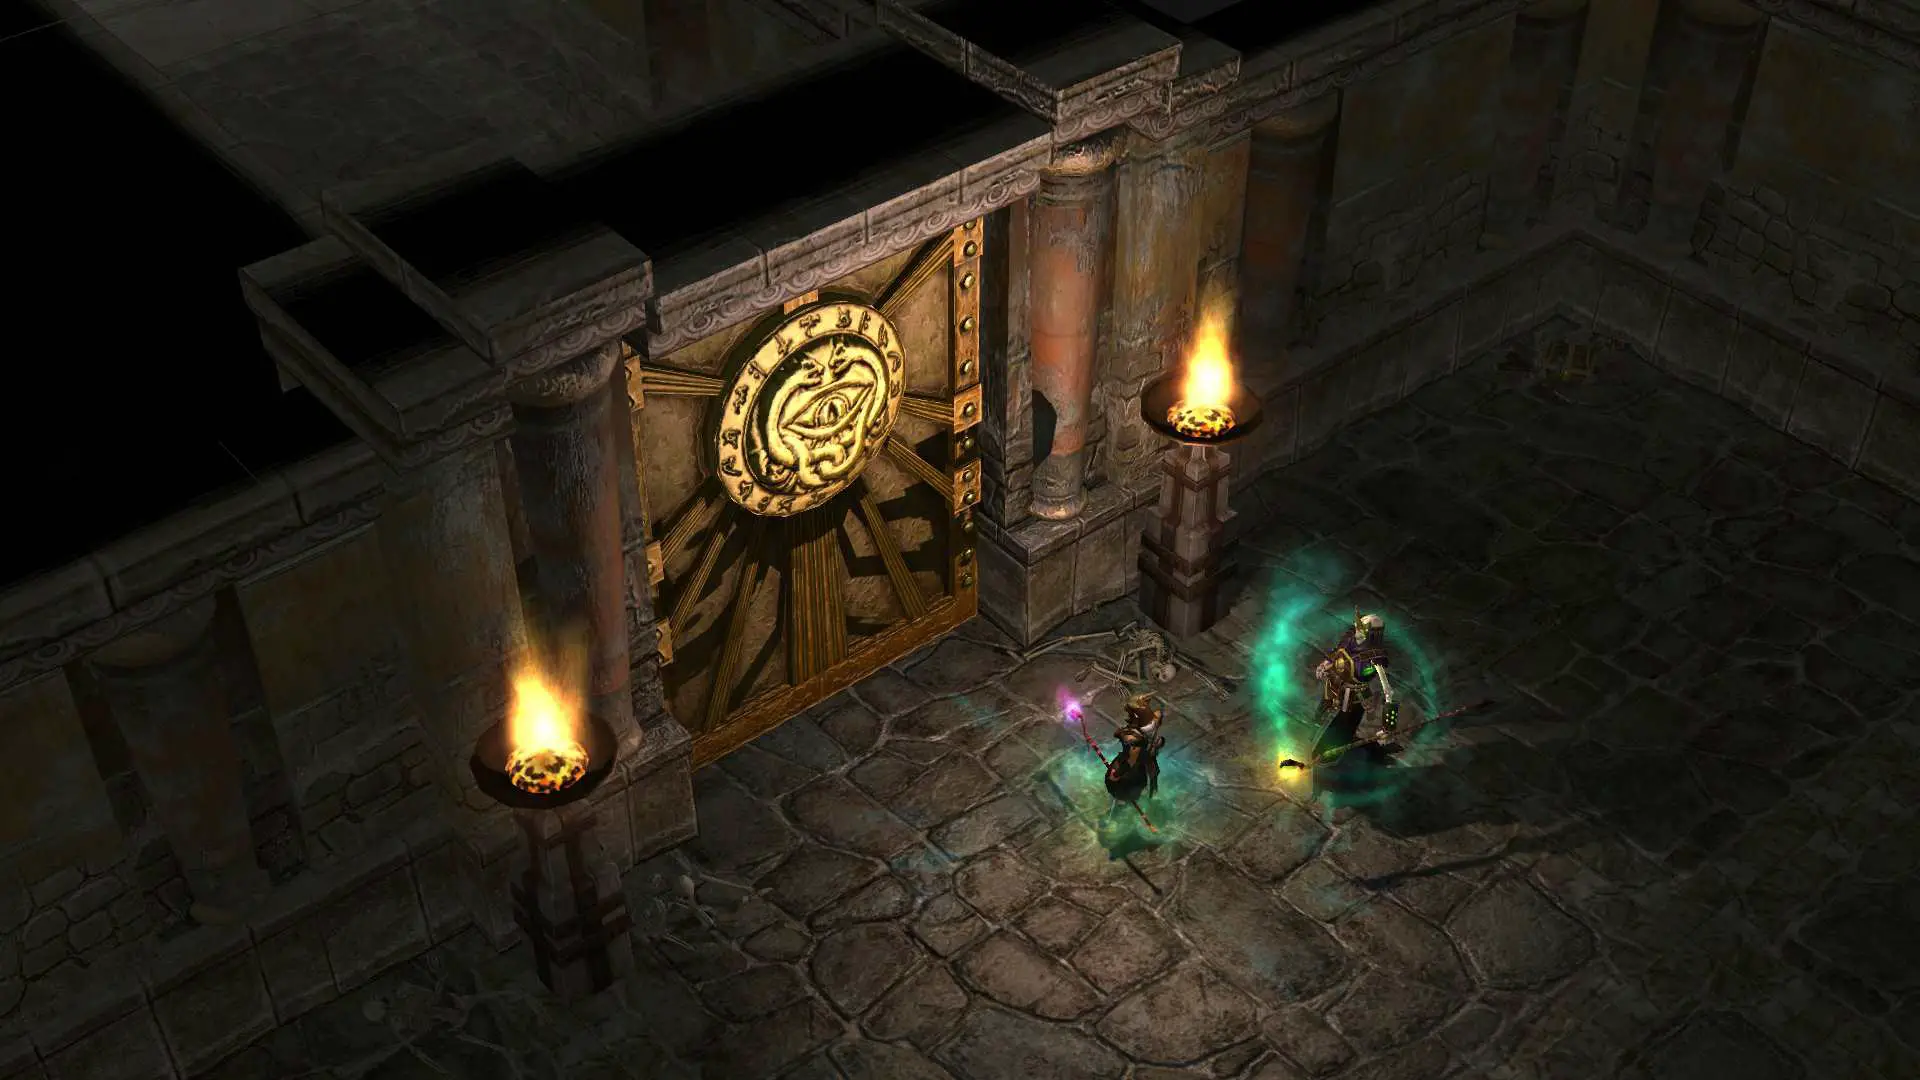   Cena do jogo Titan Quest mostrando um portão e dois magos